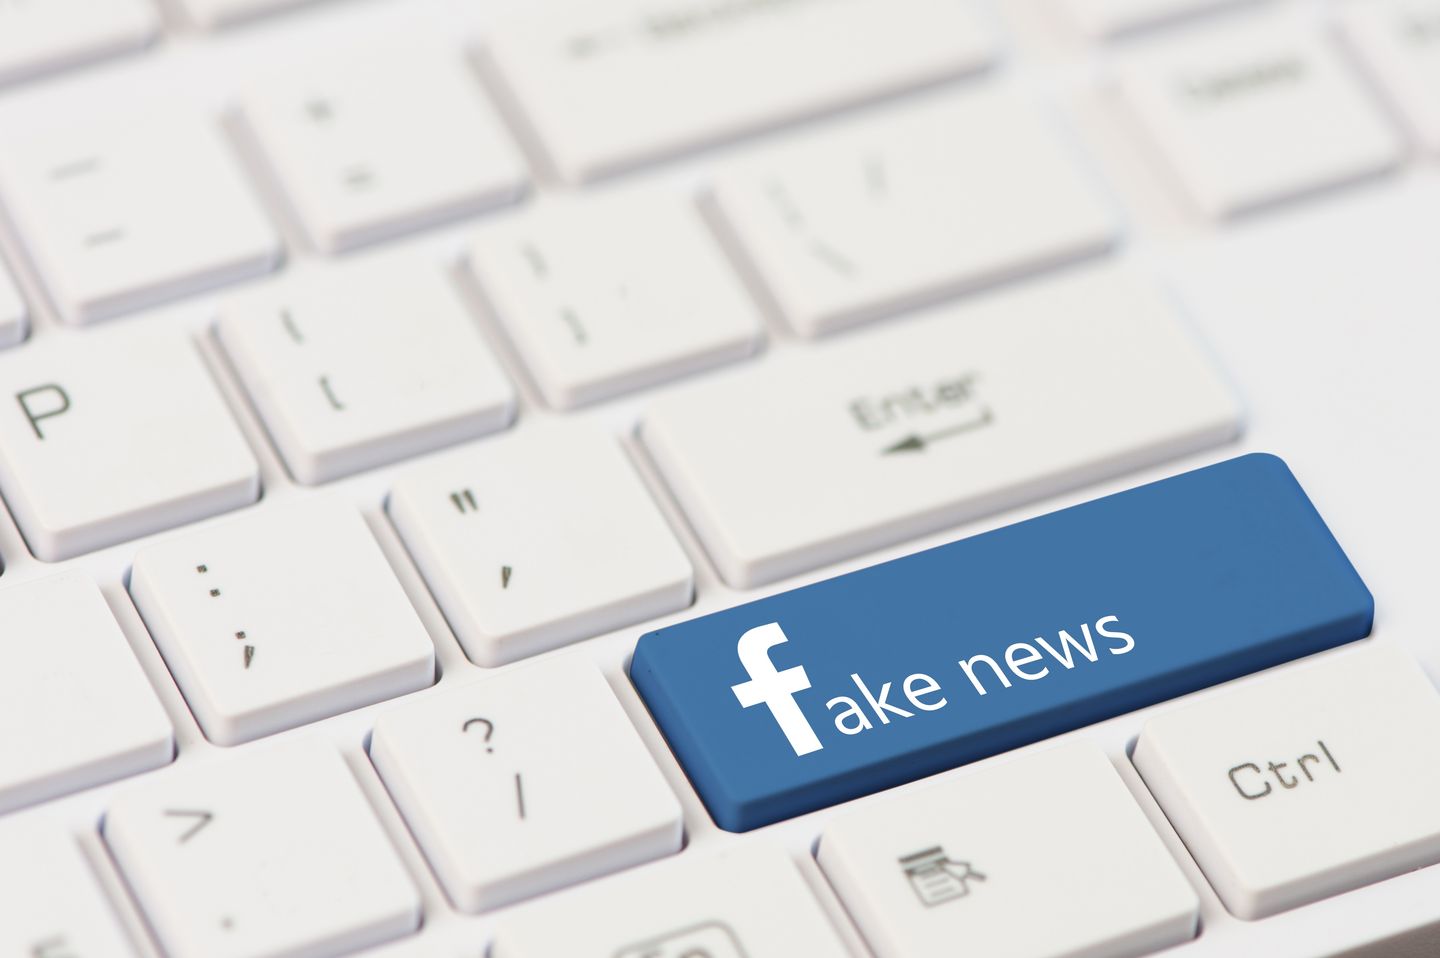 social media - fake news?